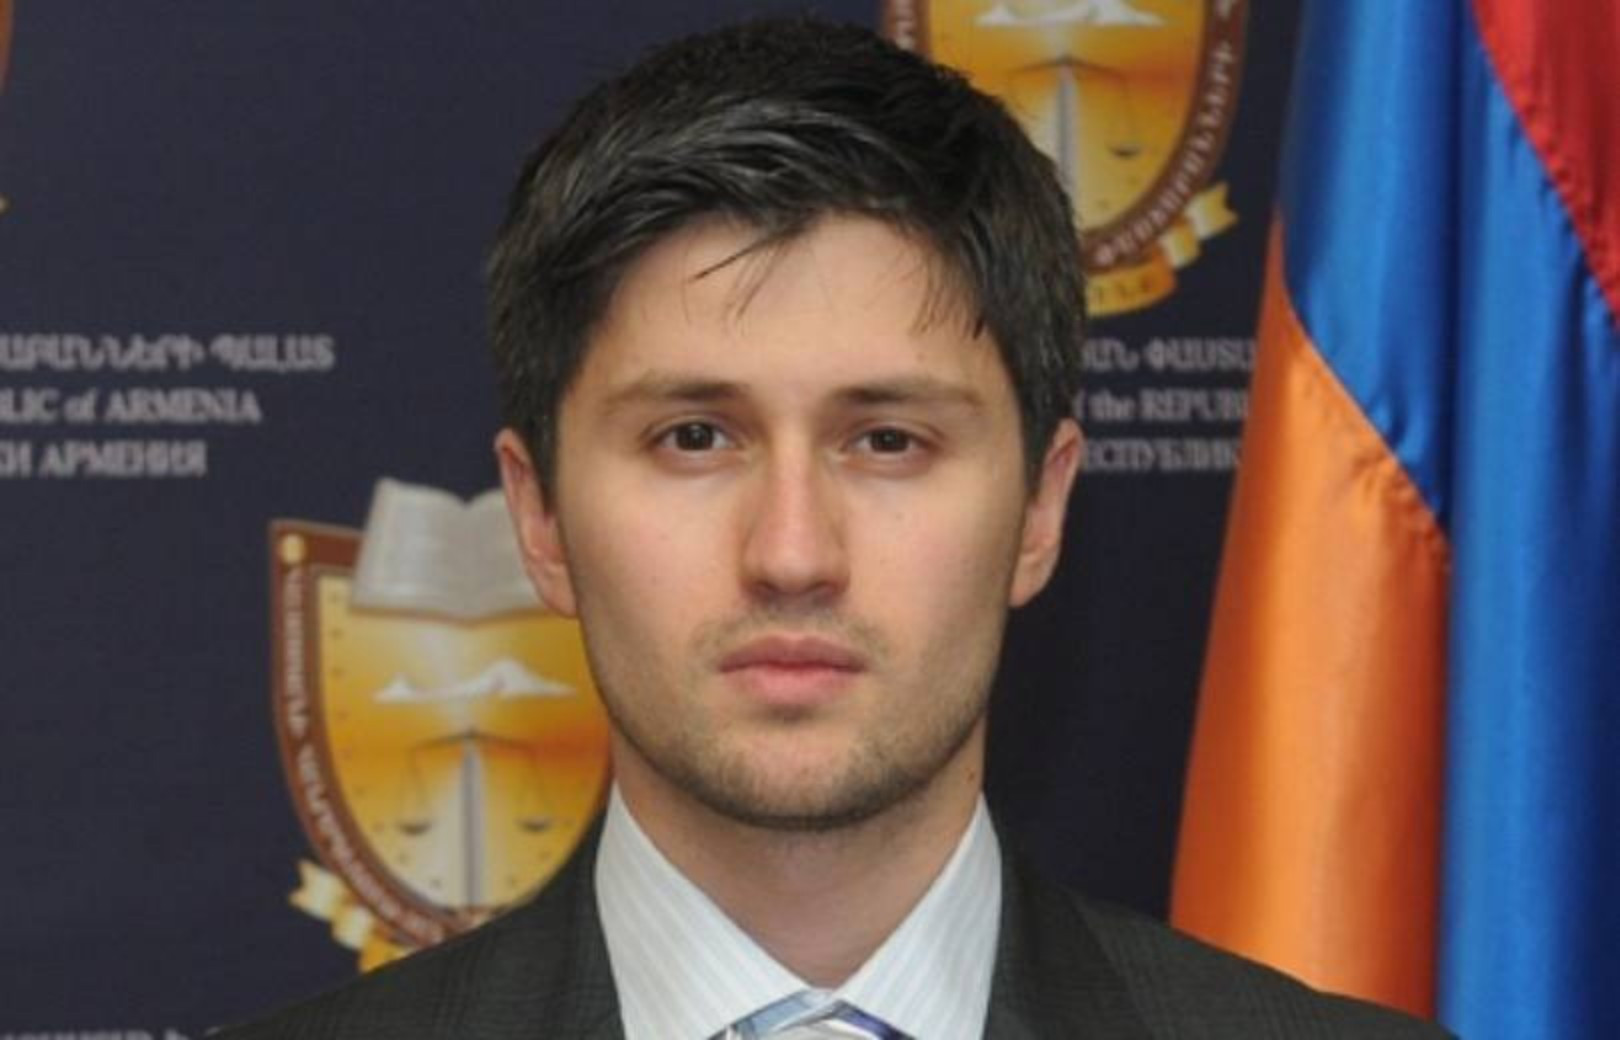 Pengacara Levon Gevorgyan ditangkap karena dicurigai menawarkan suap kepada seorang polisi – Berita dari Armenia